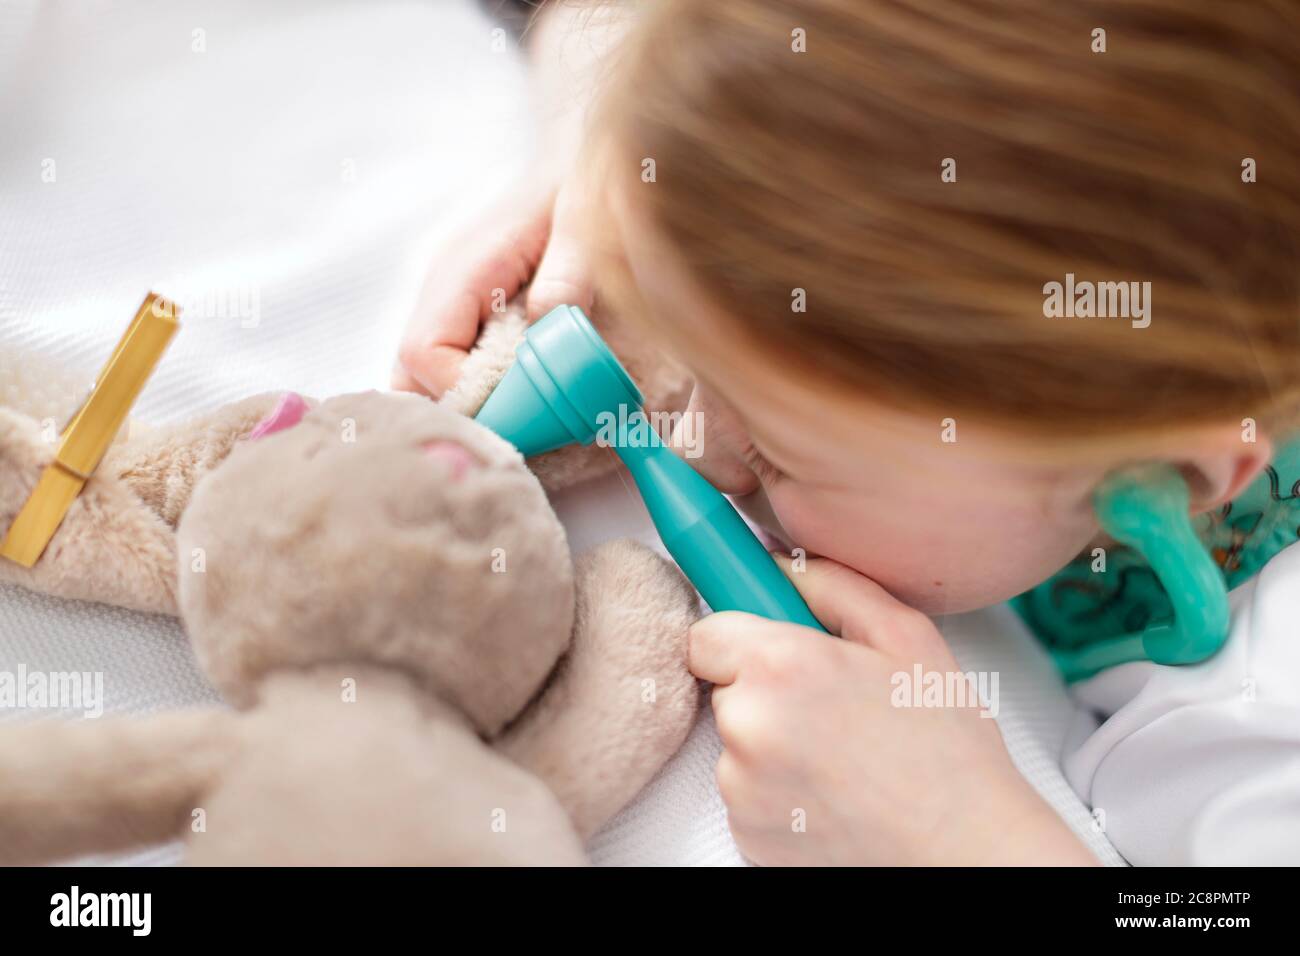 Junges Mädchen als Arzt gekleidet vorgibt Spielzeug Tier in Make-believe Krankenhaus Bett zu behandeln Stockfoto